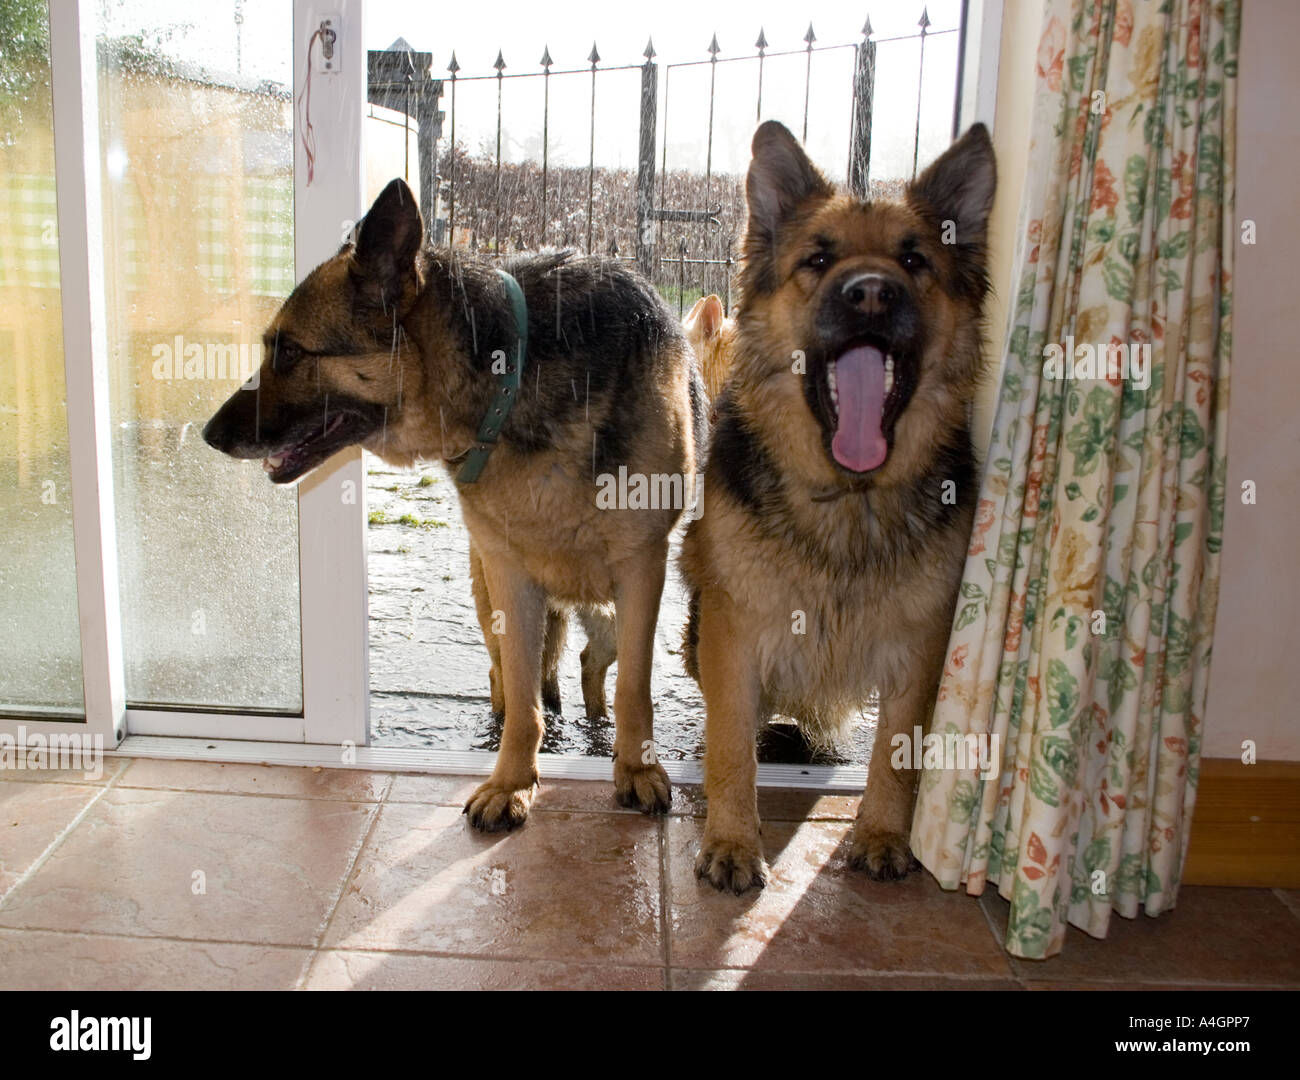 Two Alsatian dogs in doorway looking for food. Stock Photo